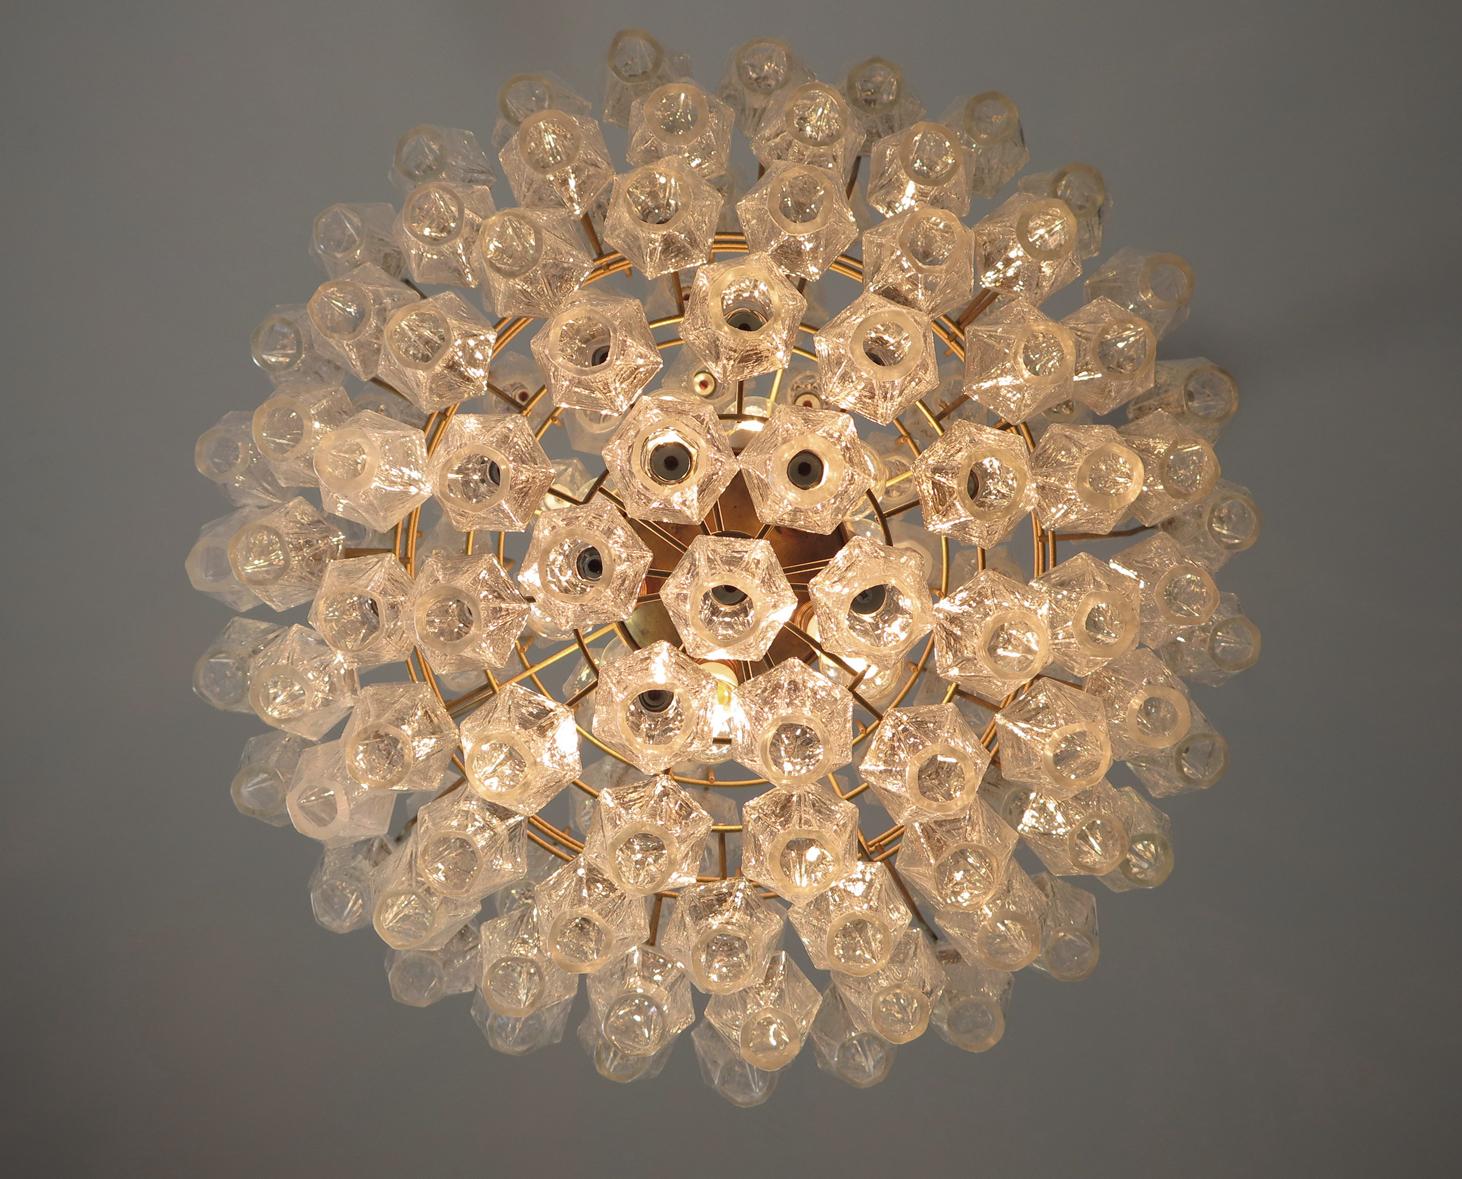 Amazing Spherical Murano Poliedri Candelier, 140 Iridescent Poliedri In Good Condition For Sale In Gaiarine Frazione Francenigo (TV), IT